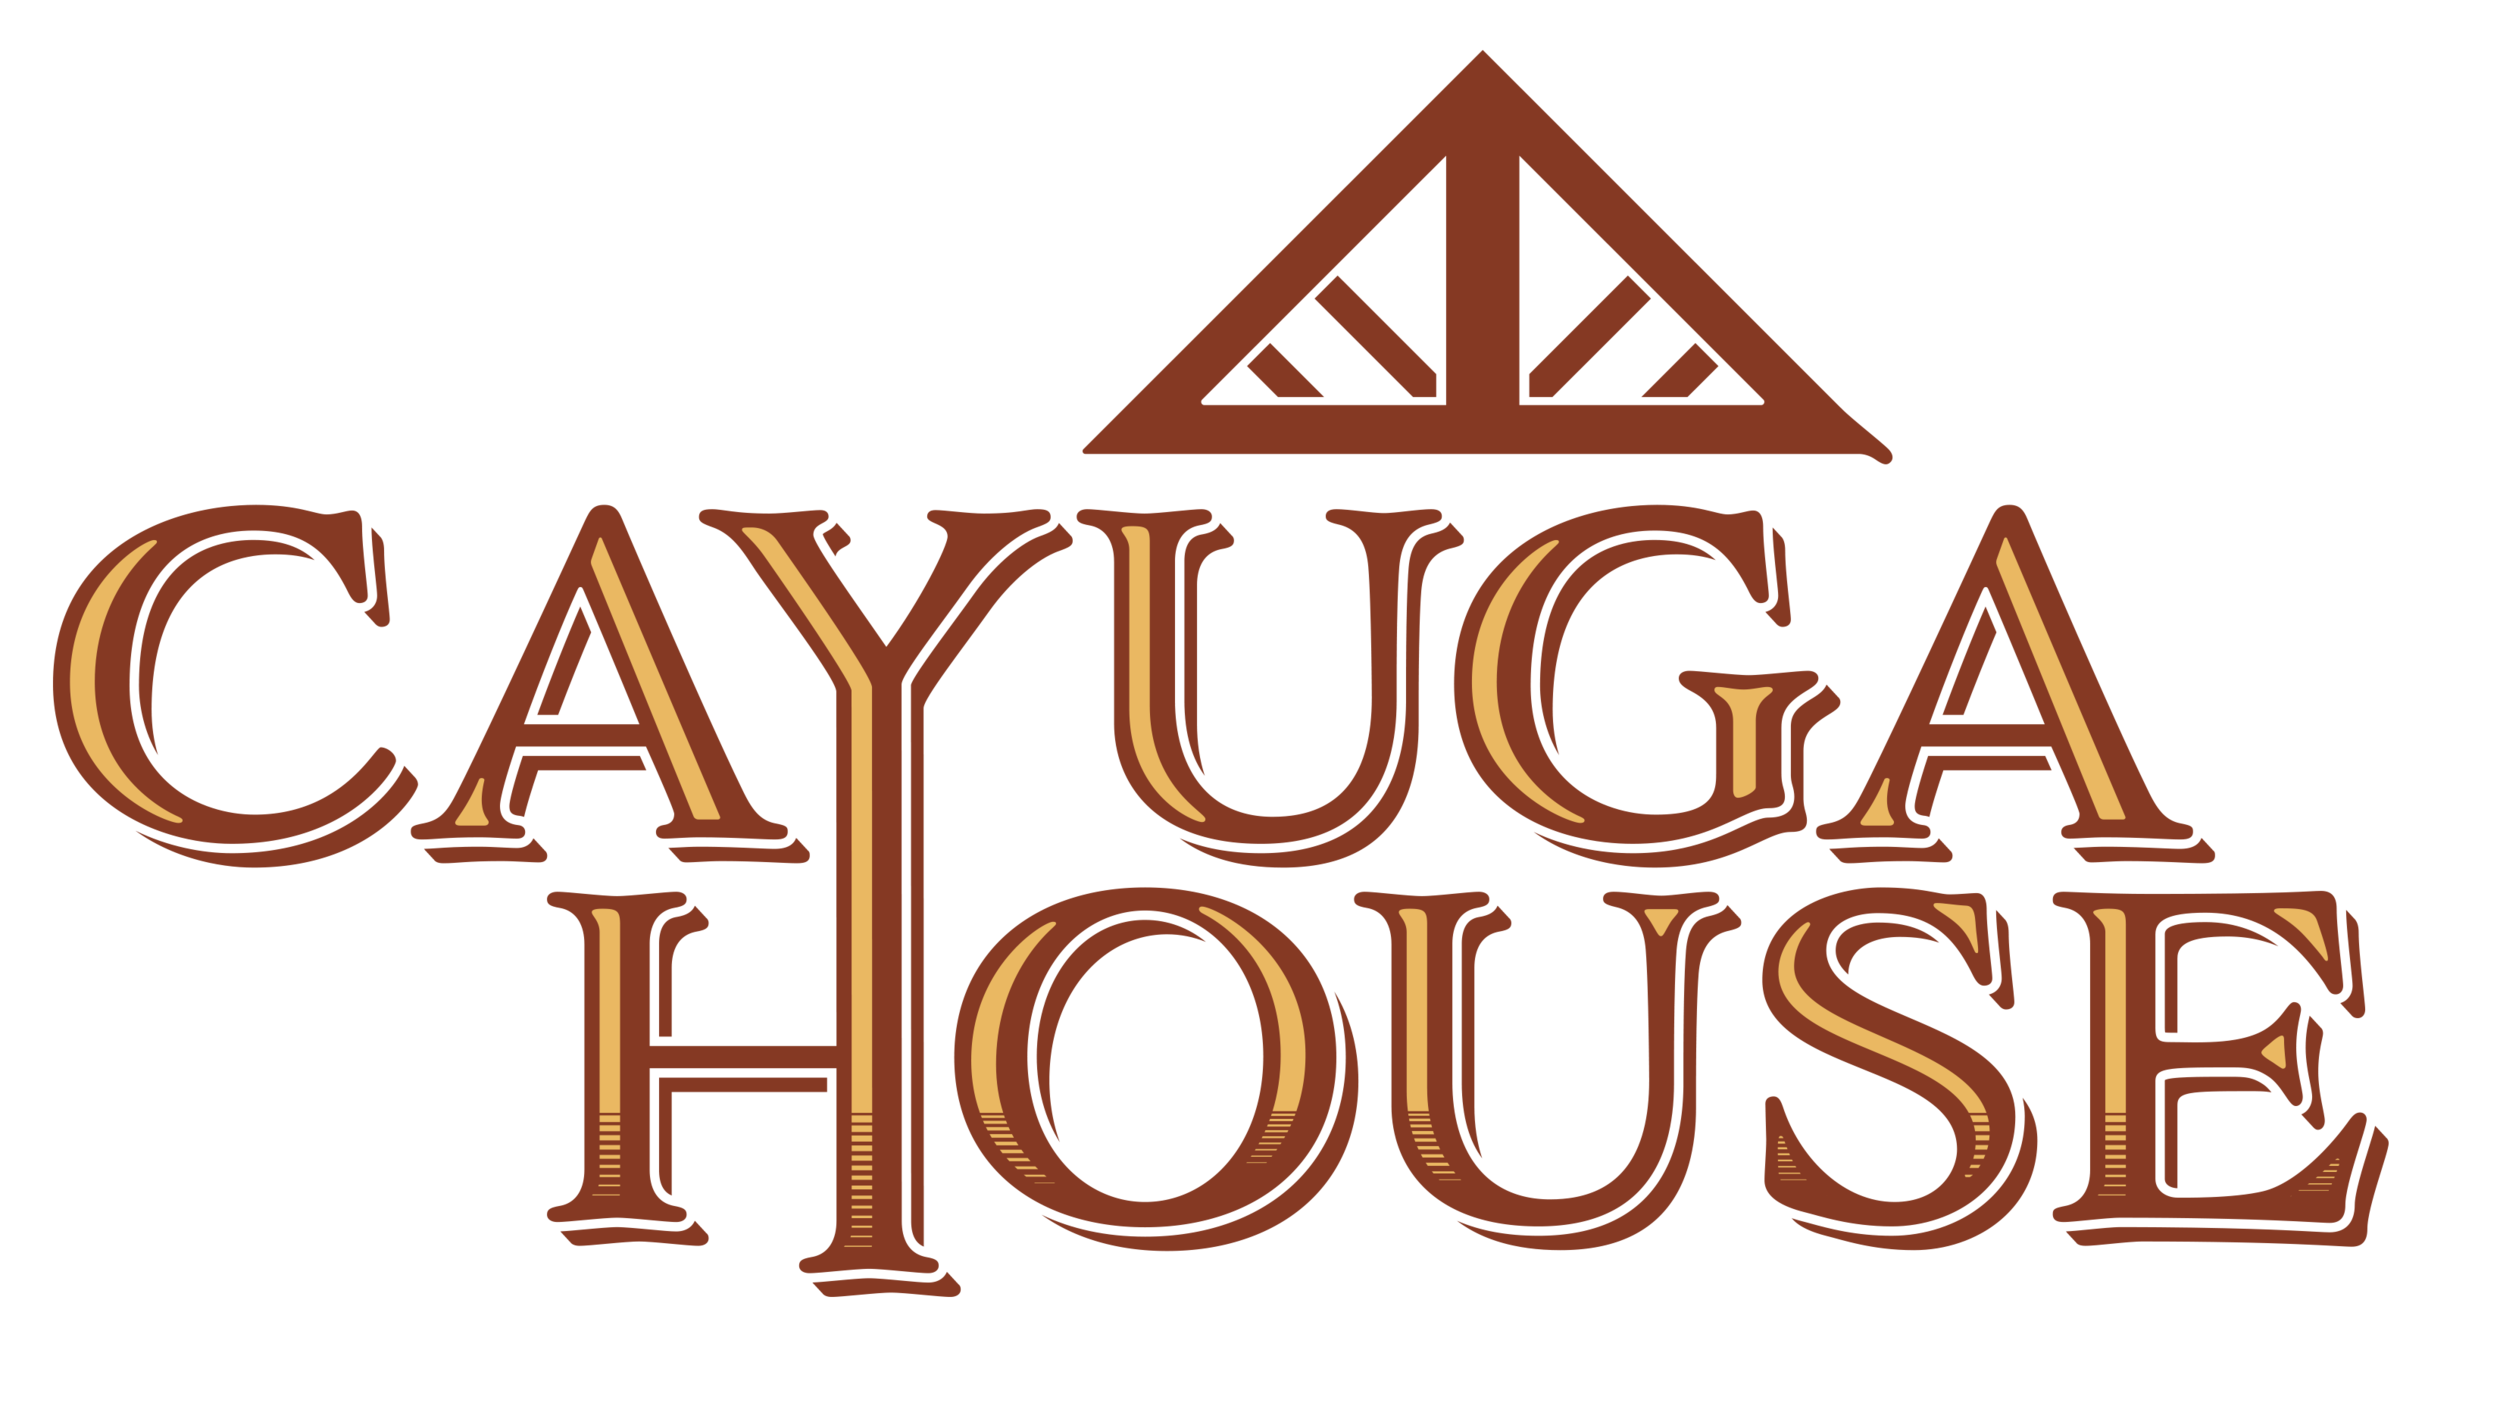 Cayuga House, The Cayuga House